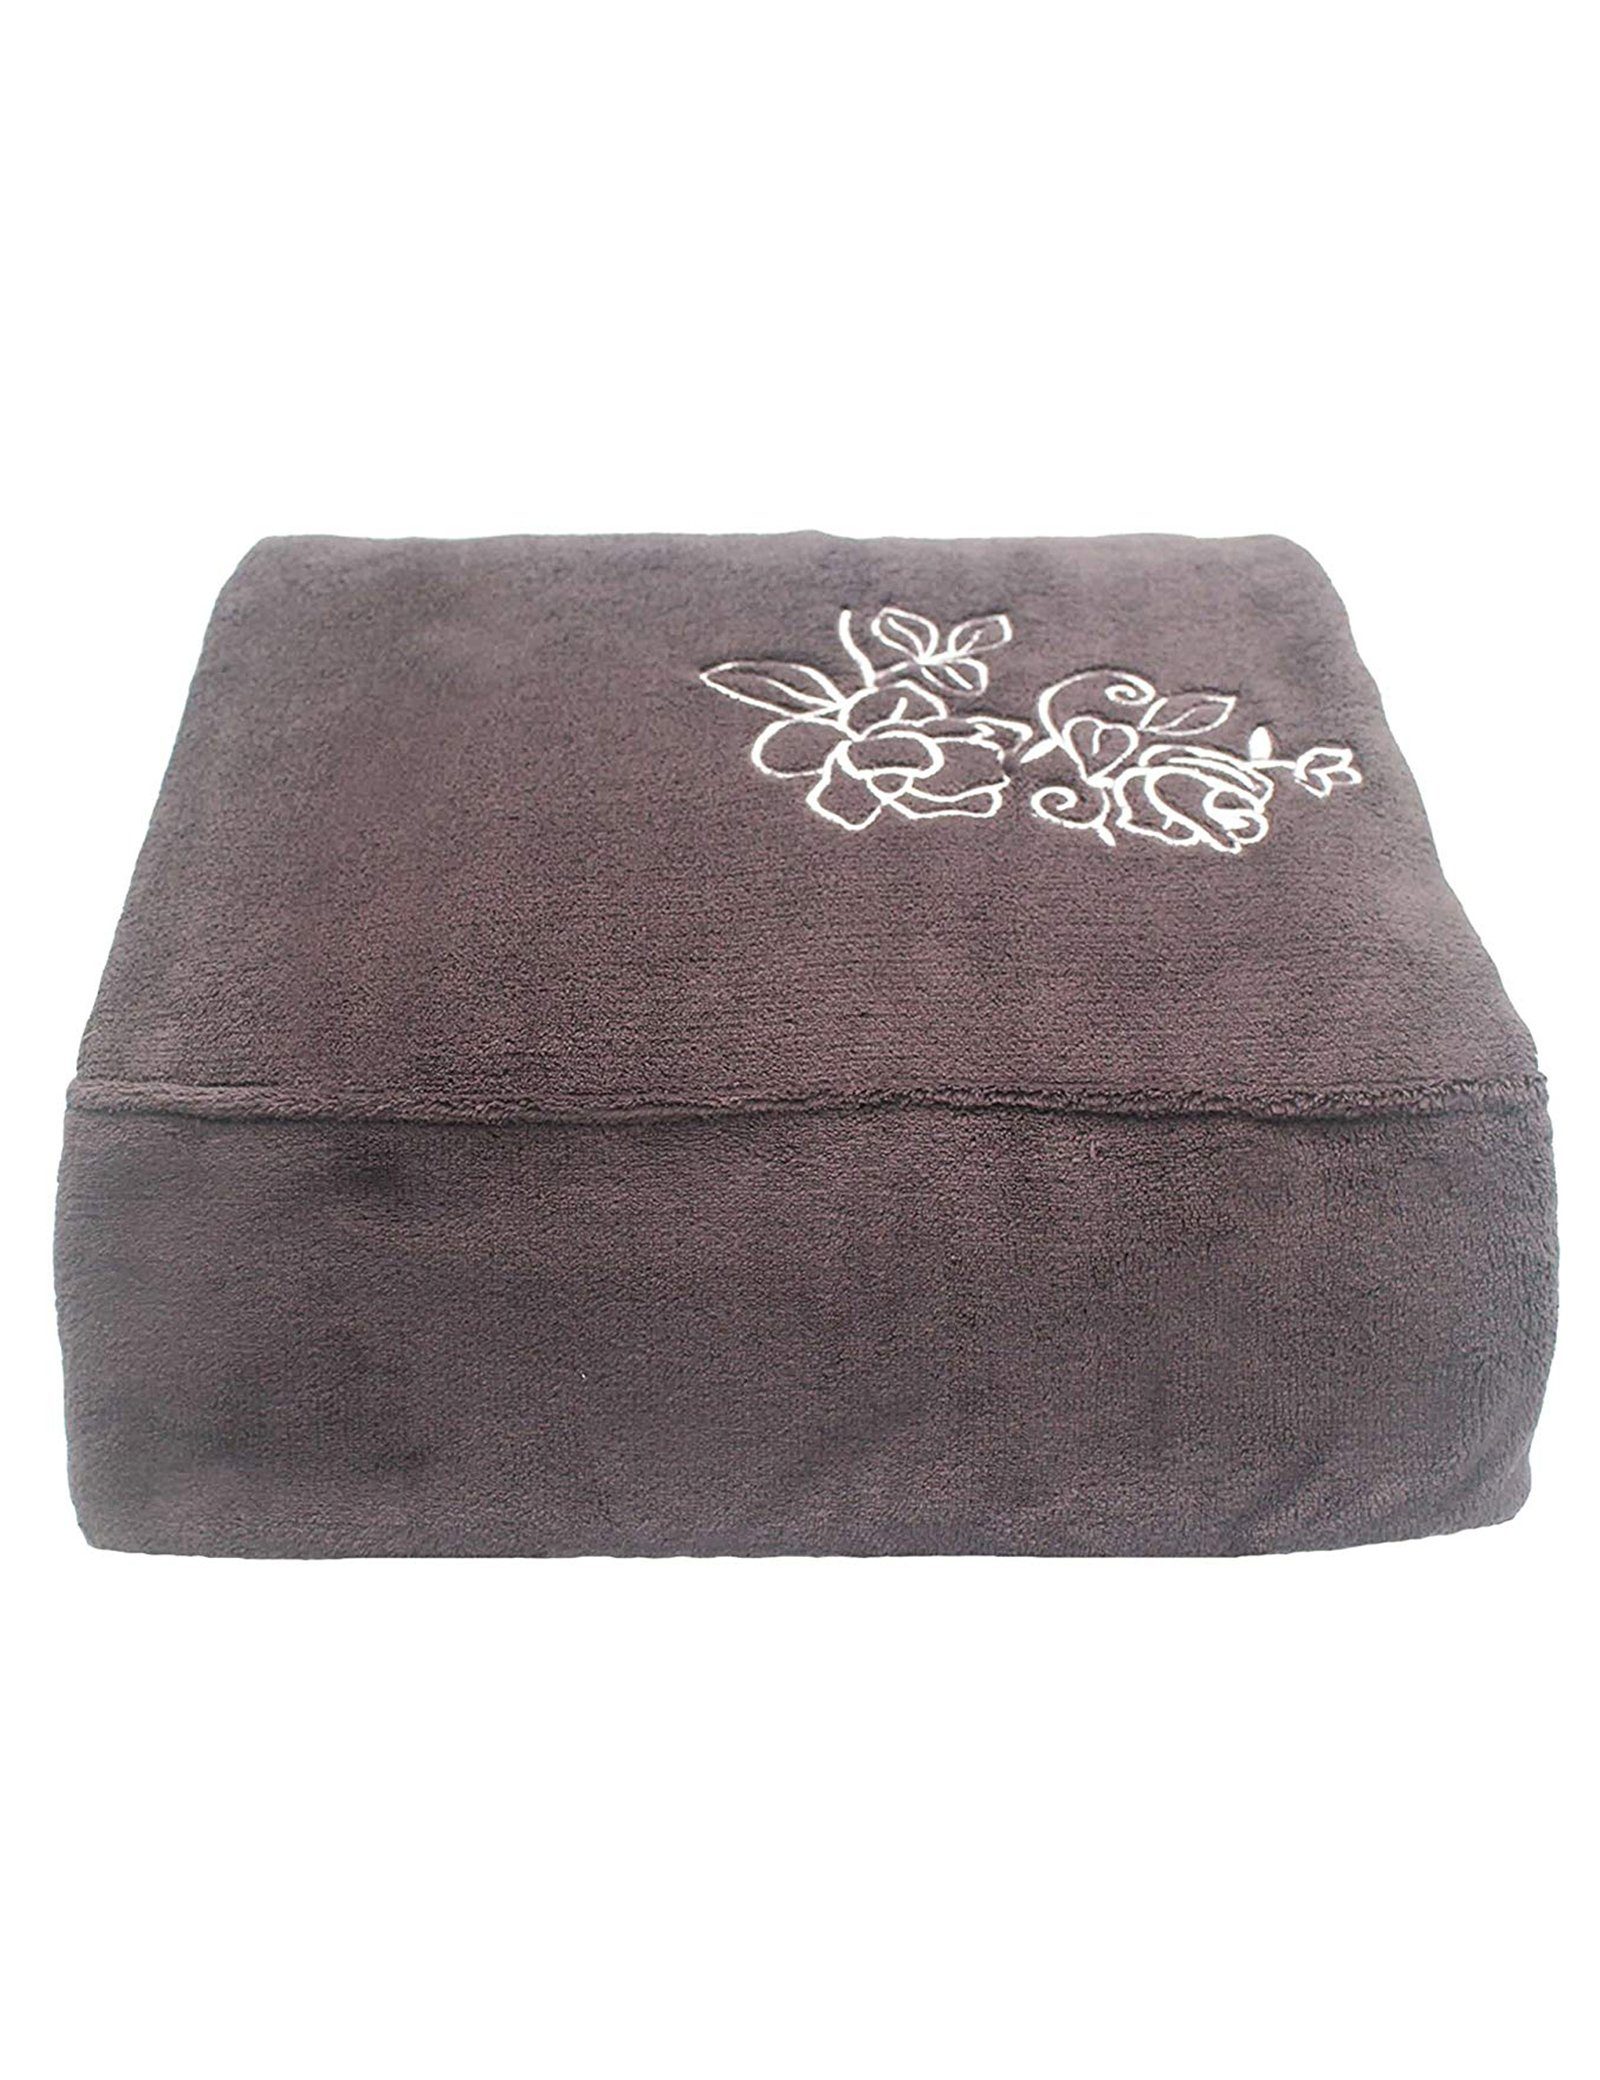 Wohndecke Kunstfaserdecken / Micro Fiber Blanket mit Embroidered Schlafdecke, RAIKOU, aus super weichem Kuschelfleece, 200cmx150cm Coffee | Kunstfaserdecken